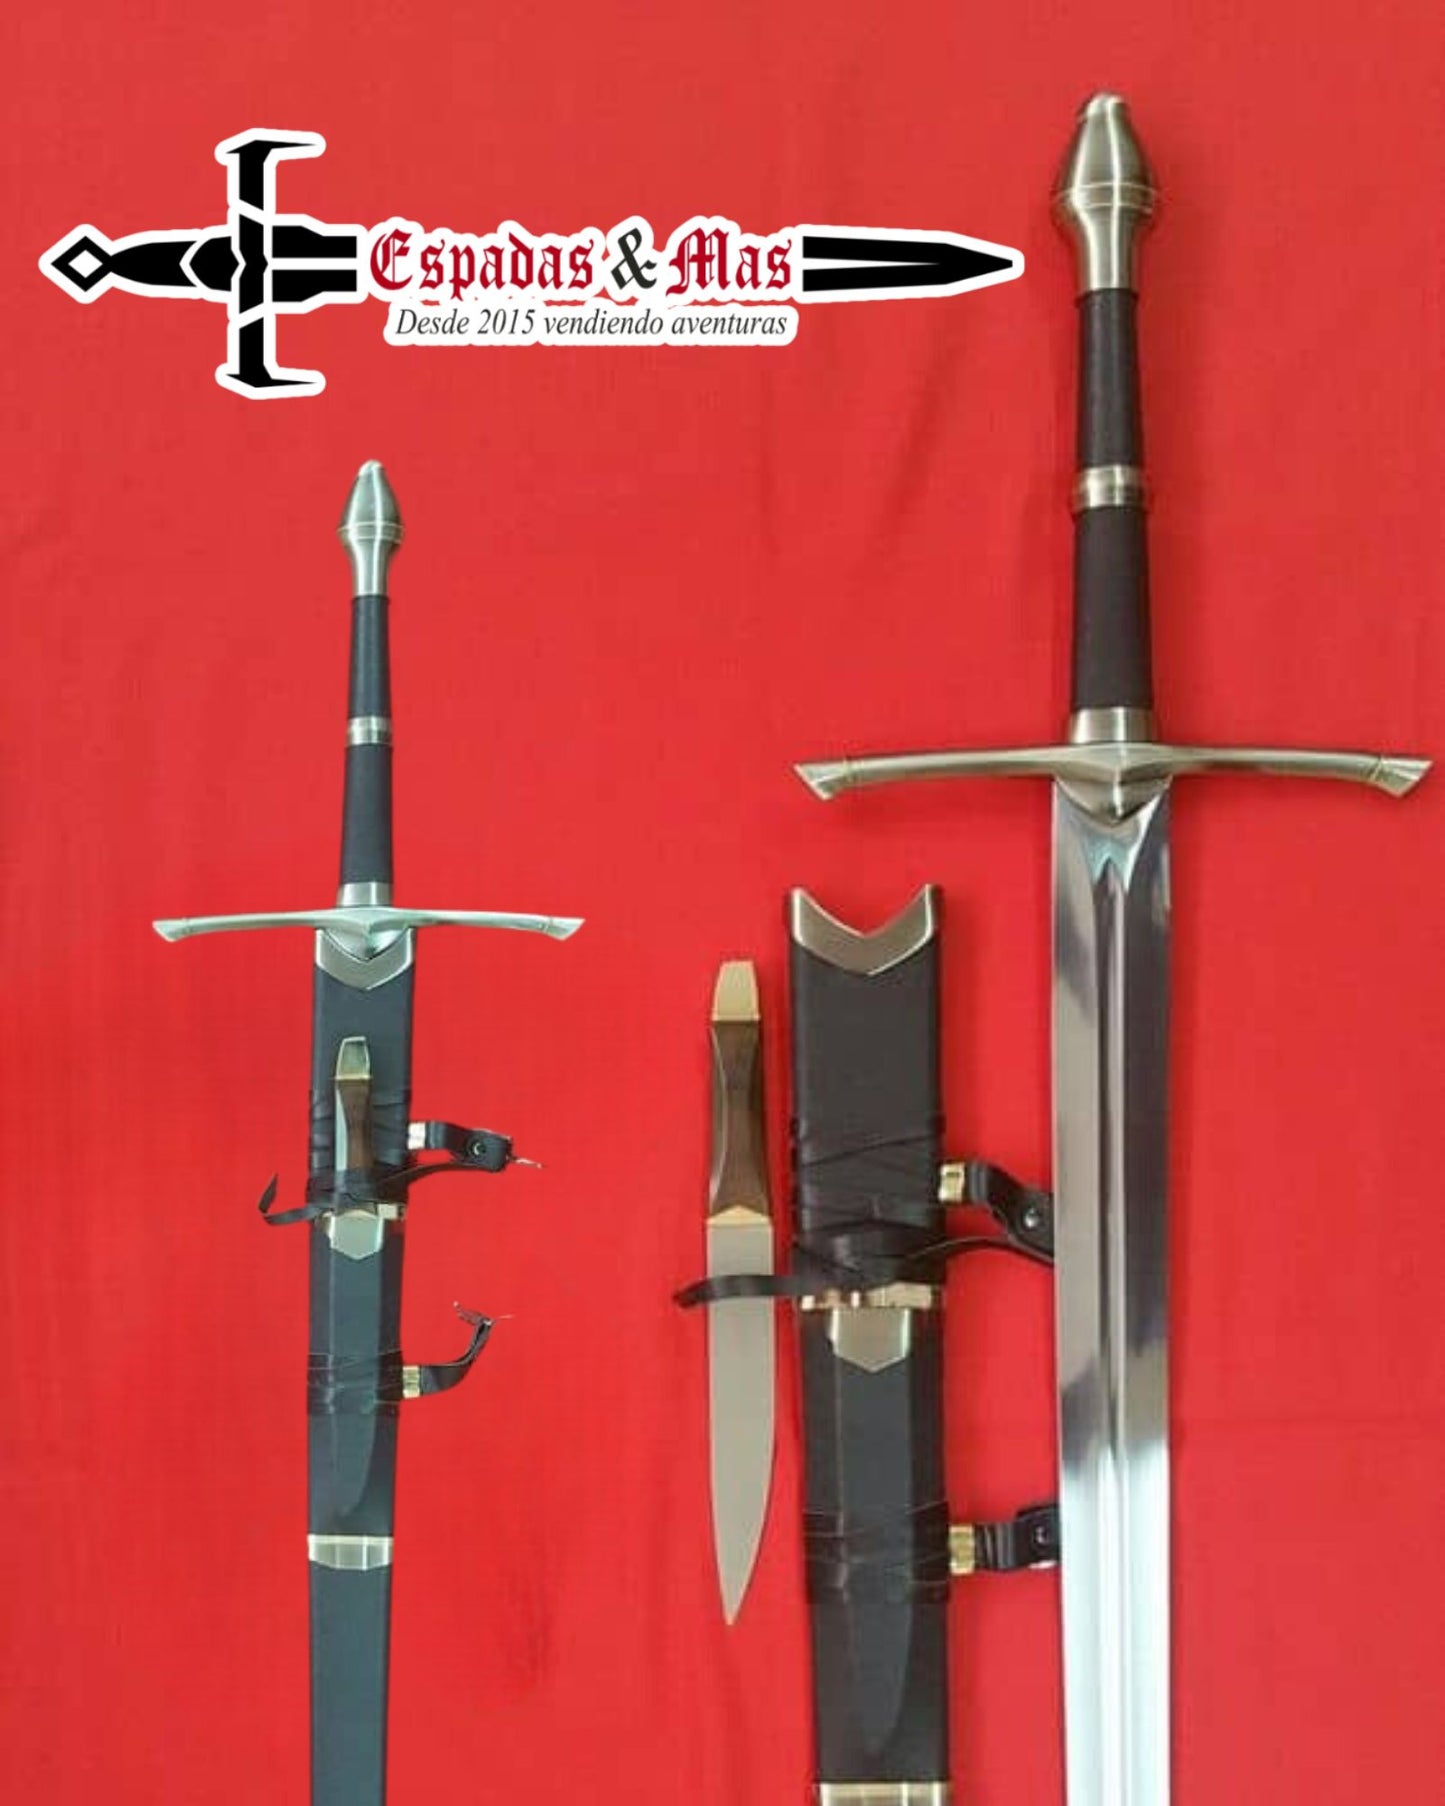 Detalle de la Espada Strider de Aragorn de El Señor de los Anillos con funda y pequeño cuchillo. Vendida por Espadas y más